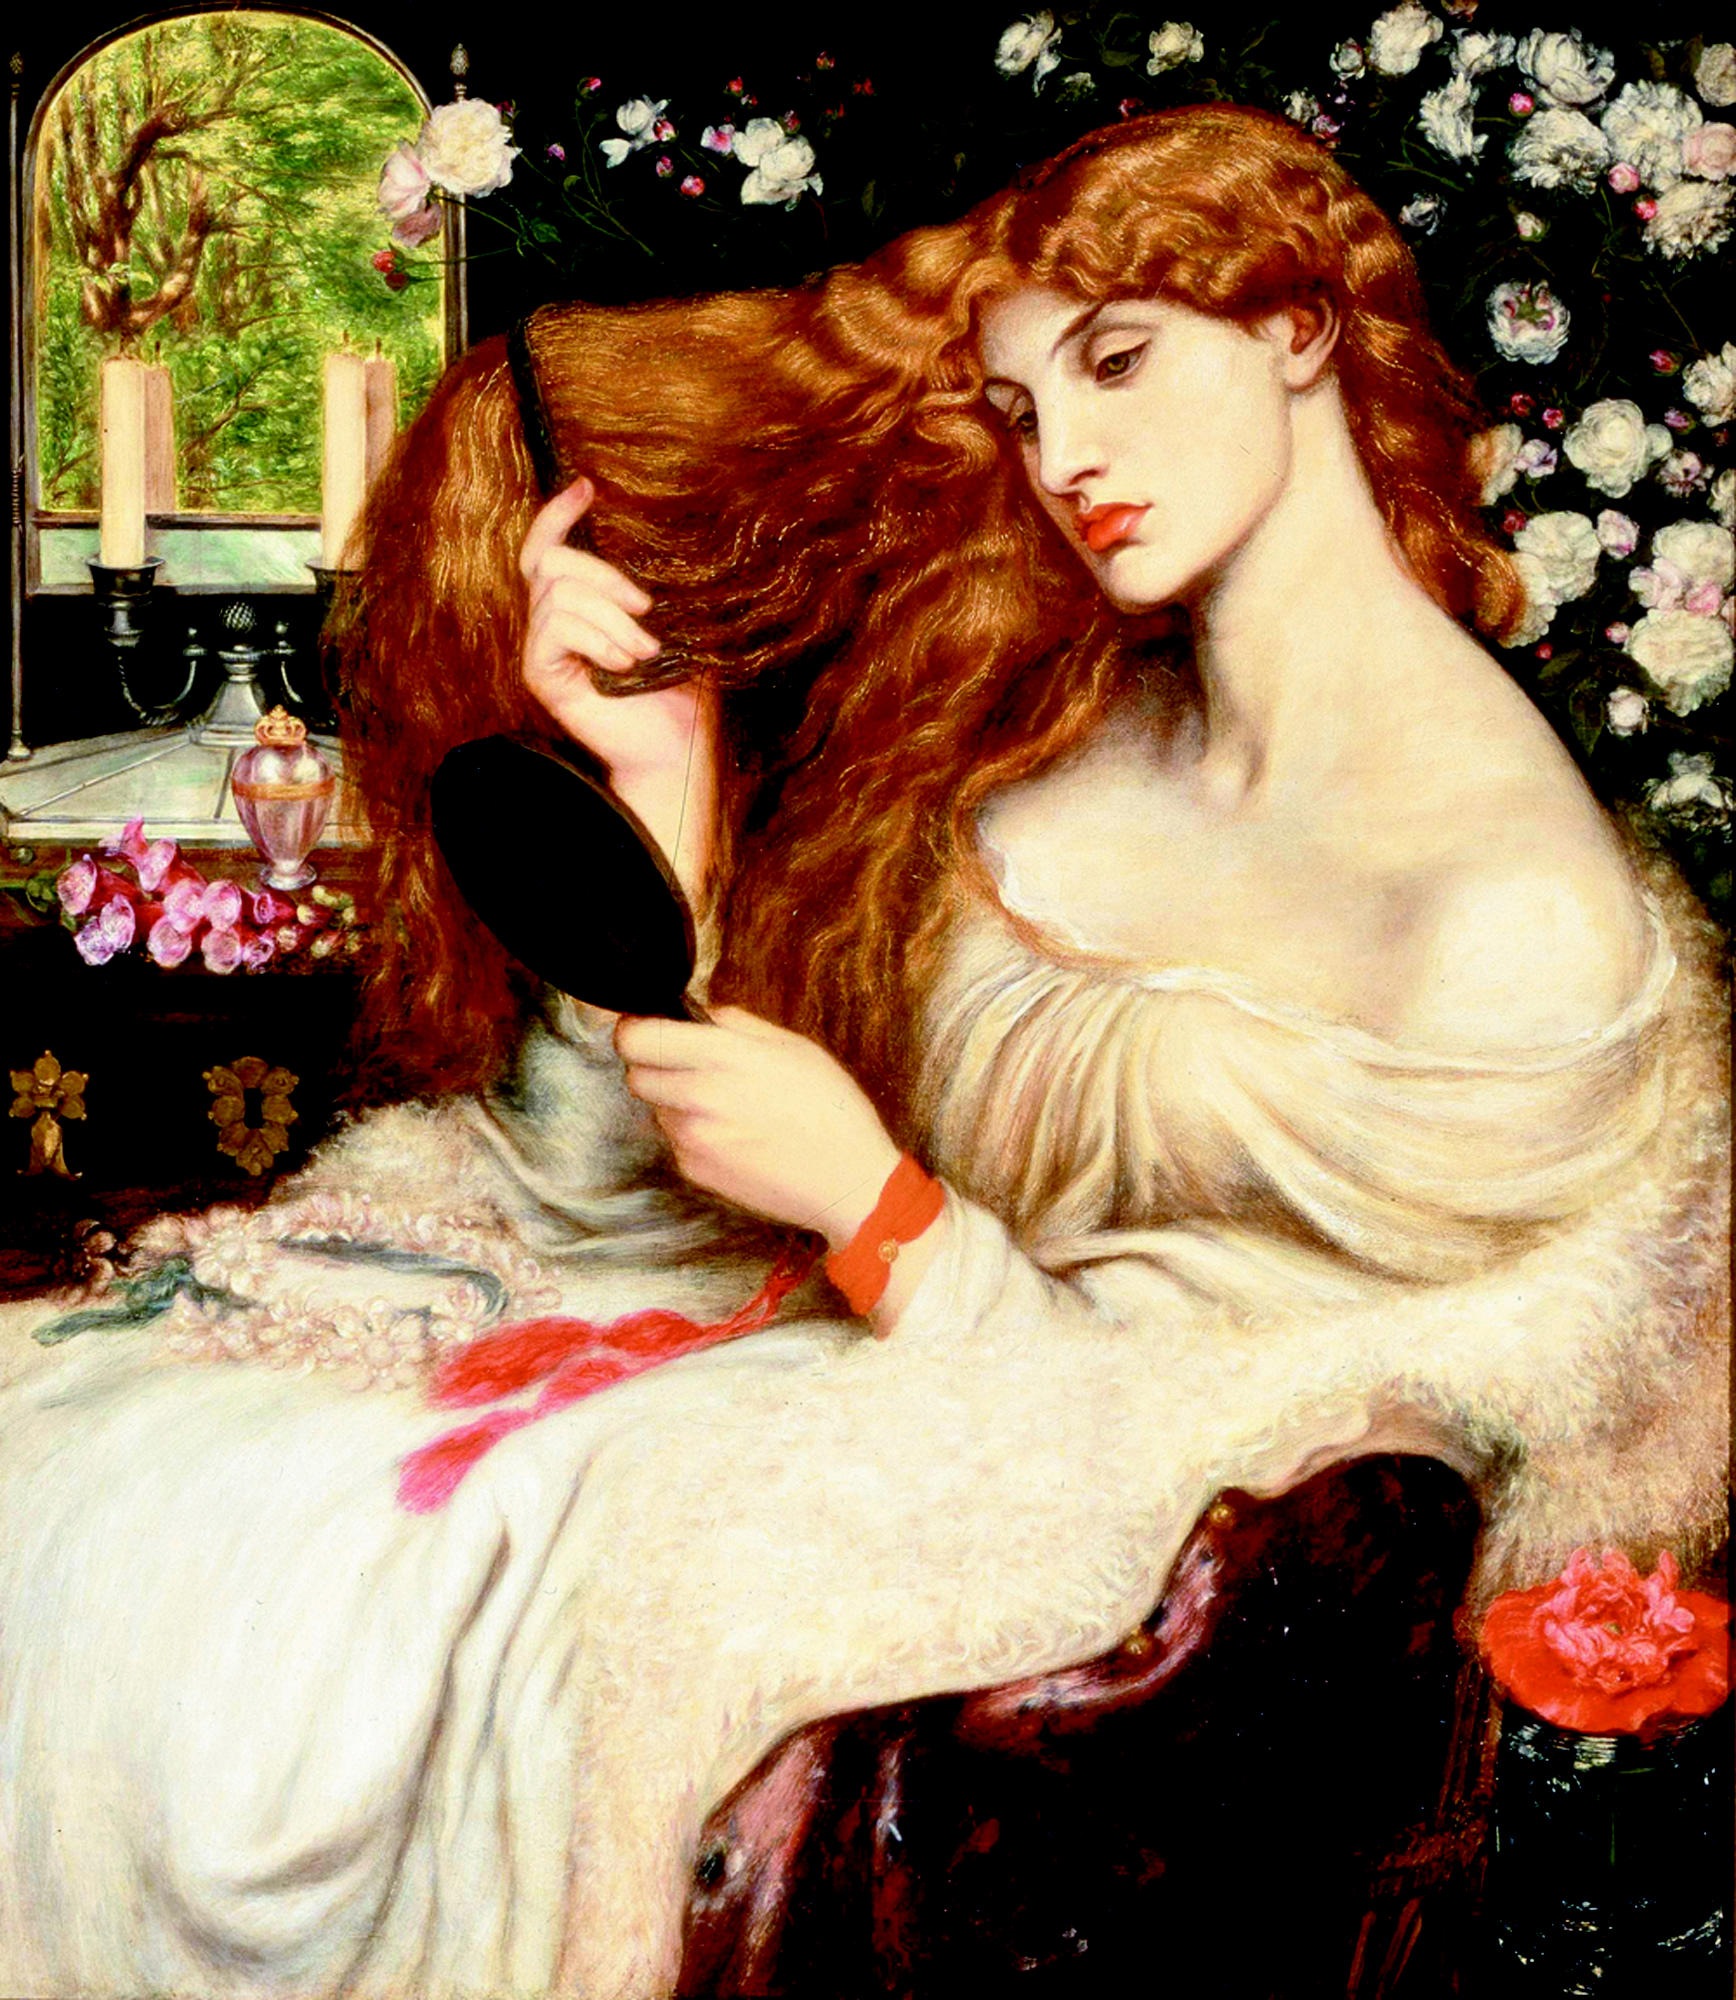 莉莉絲夫人 by Dante Gabriel Rossetti - 1866–68 - 96.5 cm × 85.1 cm 